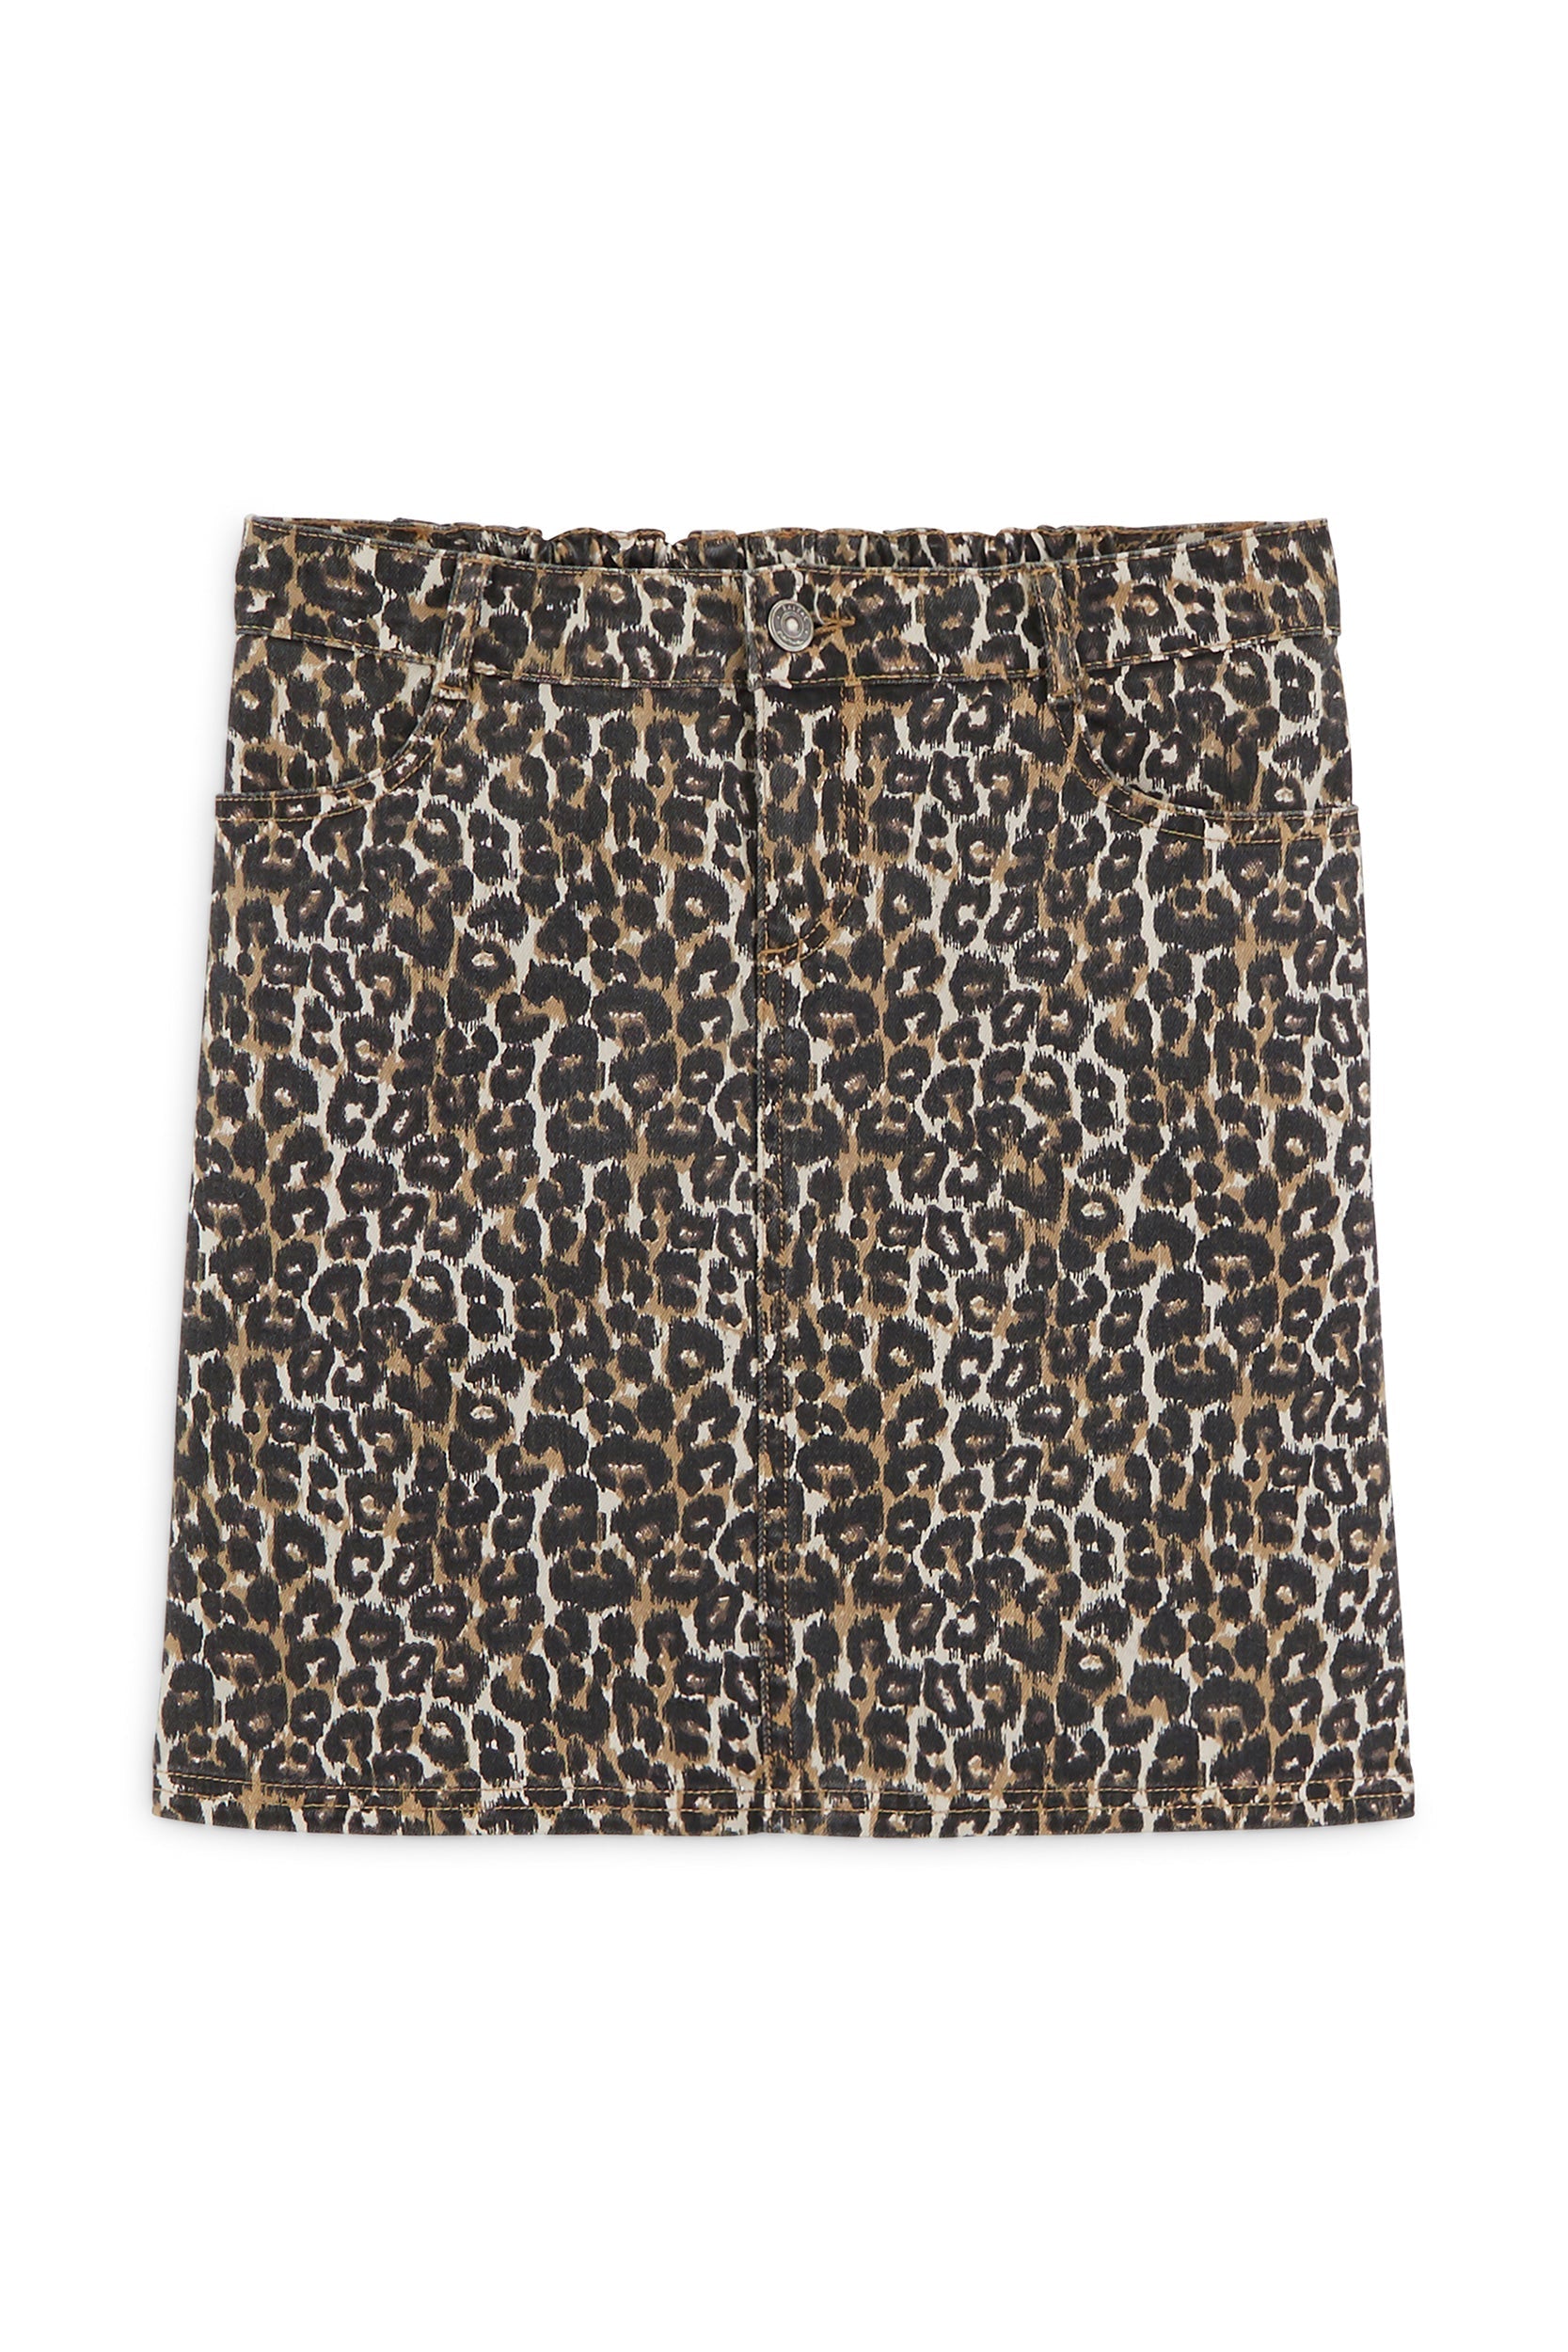 Loane leopard print skirt